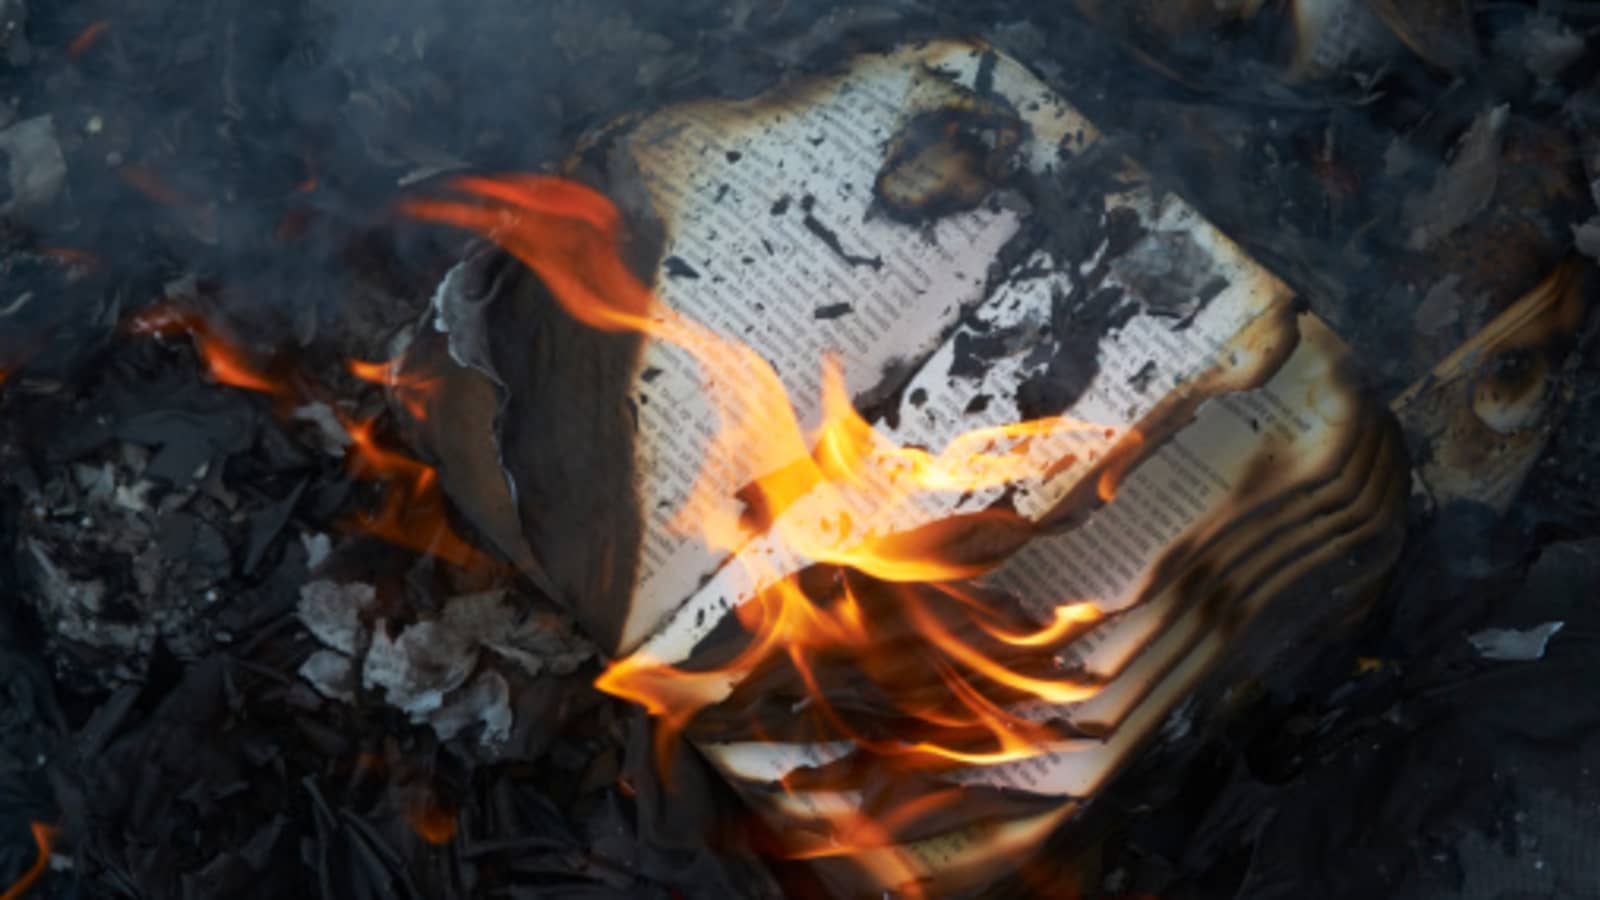 Οι Ρώσοι καίνε "απαγορευμένα" βιβλία στη Μελιτόπολη